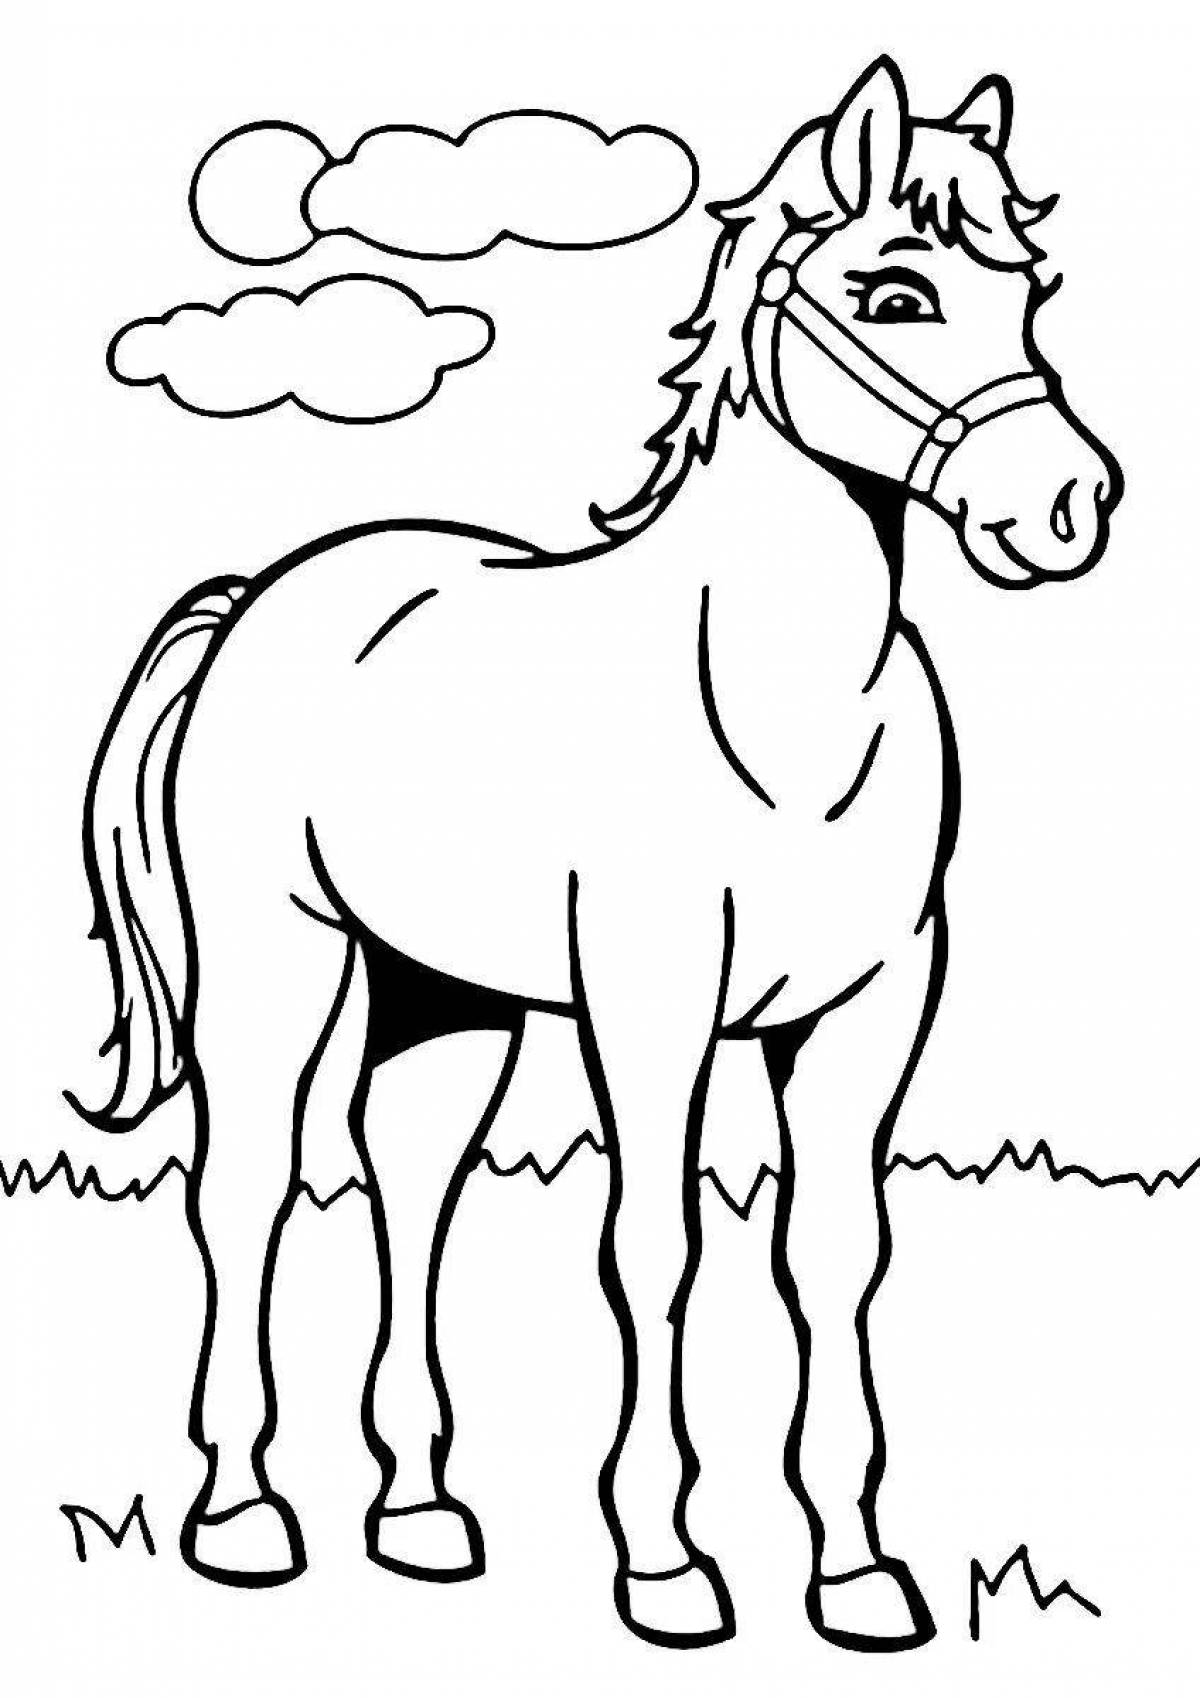 Забавный рисунок лошади для детей